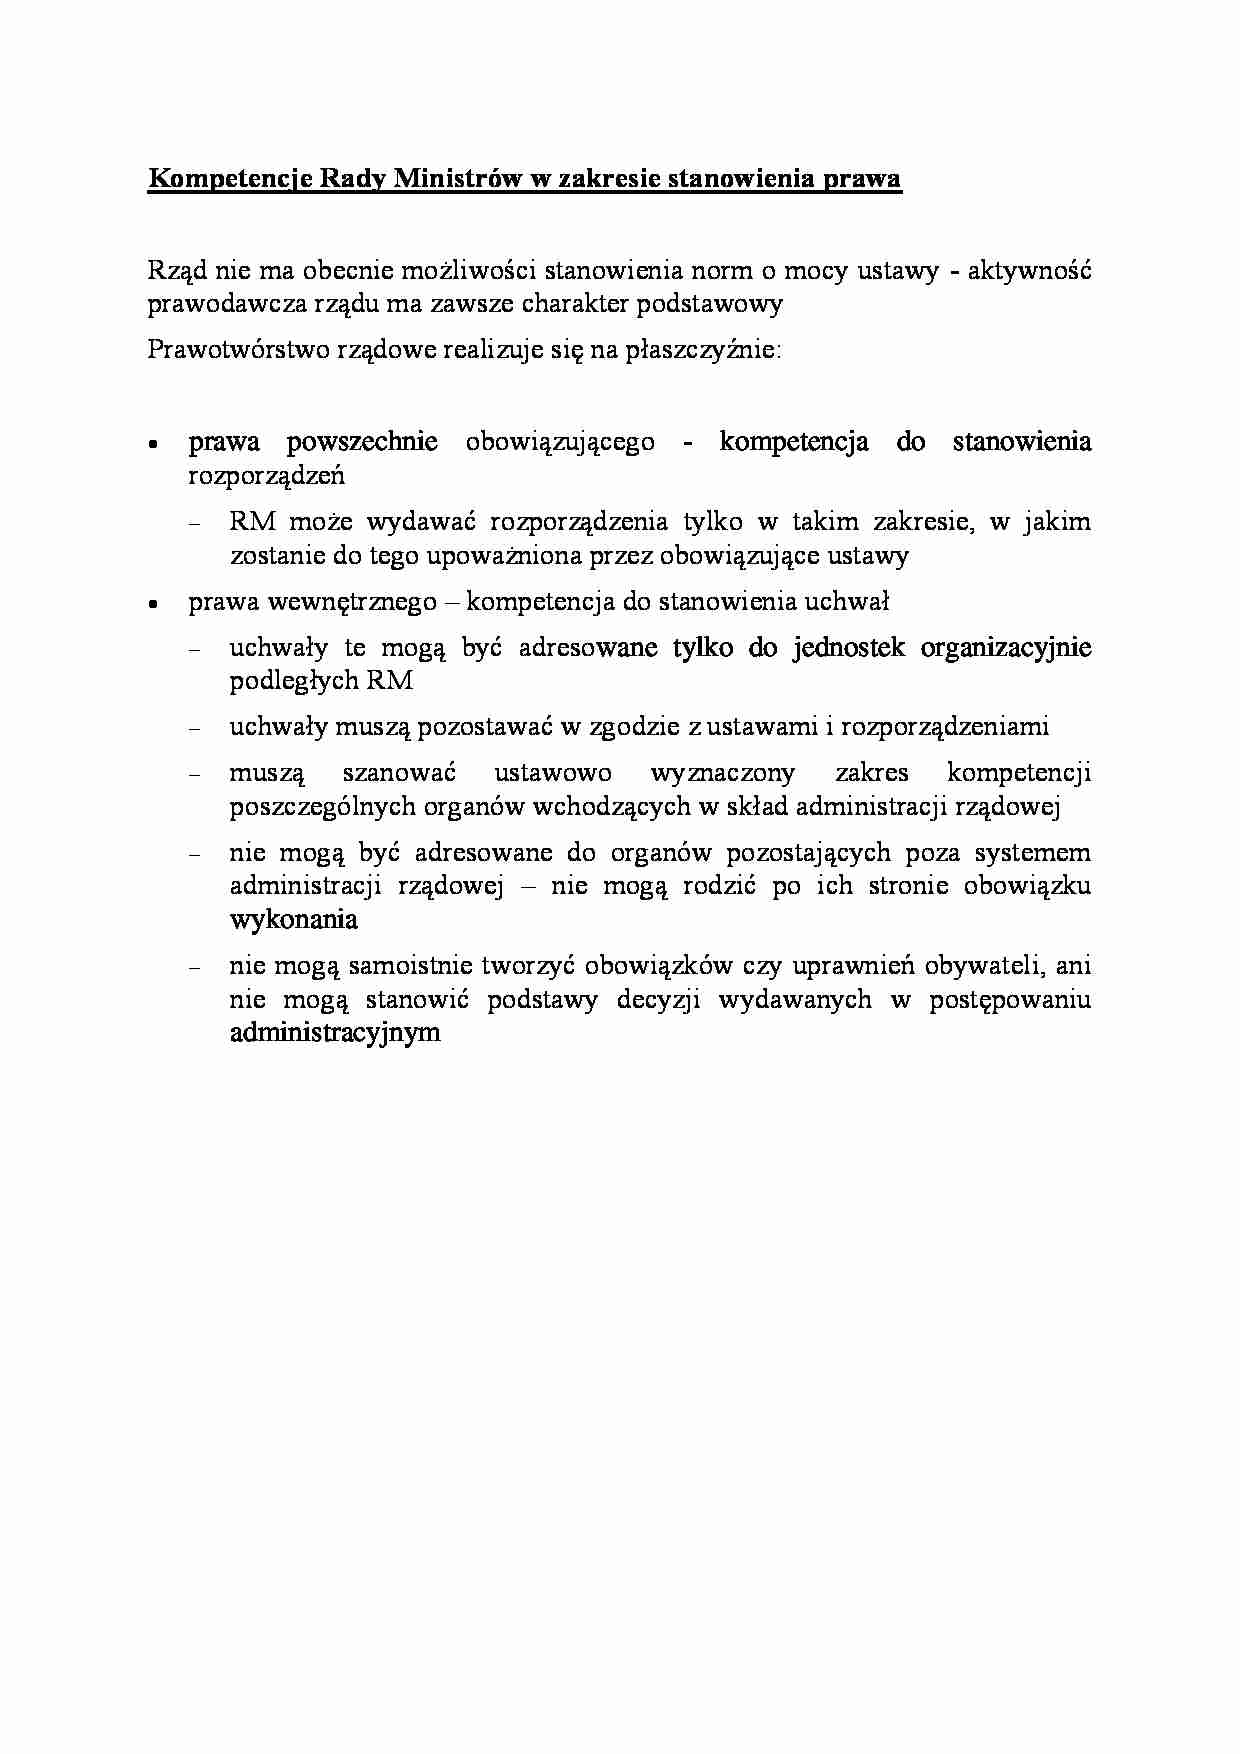 Kompetencje Rady Ministrów w zakresie stanowienia prawa-opracowanie - strona 1